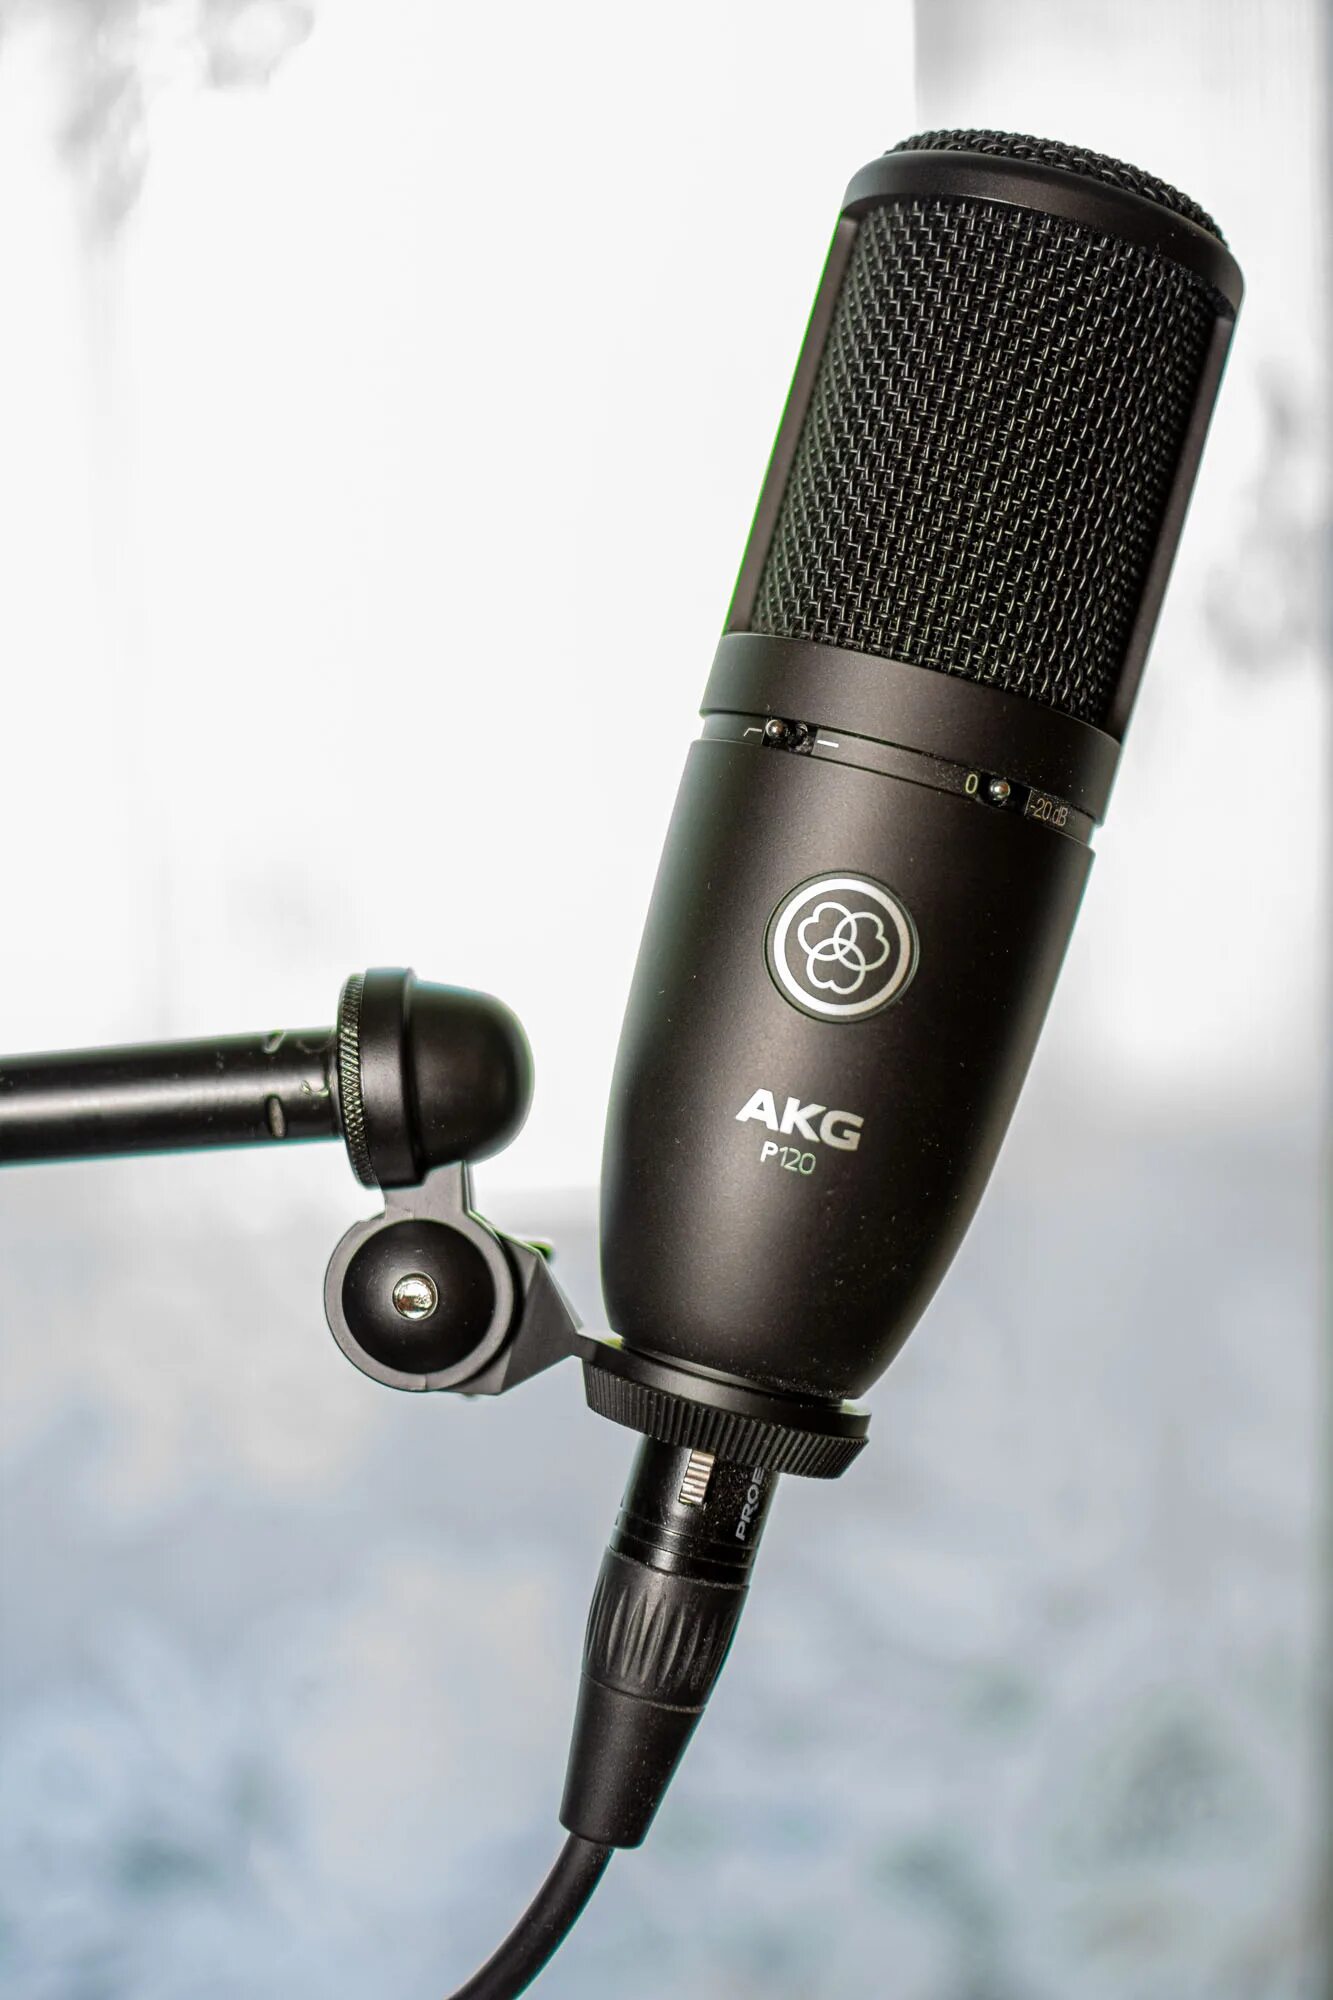 Микрофон AKG p120. Микрофон конденсаторный AKG p120. Микрофон AKG Perception 120. AKG p120 комплектация.